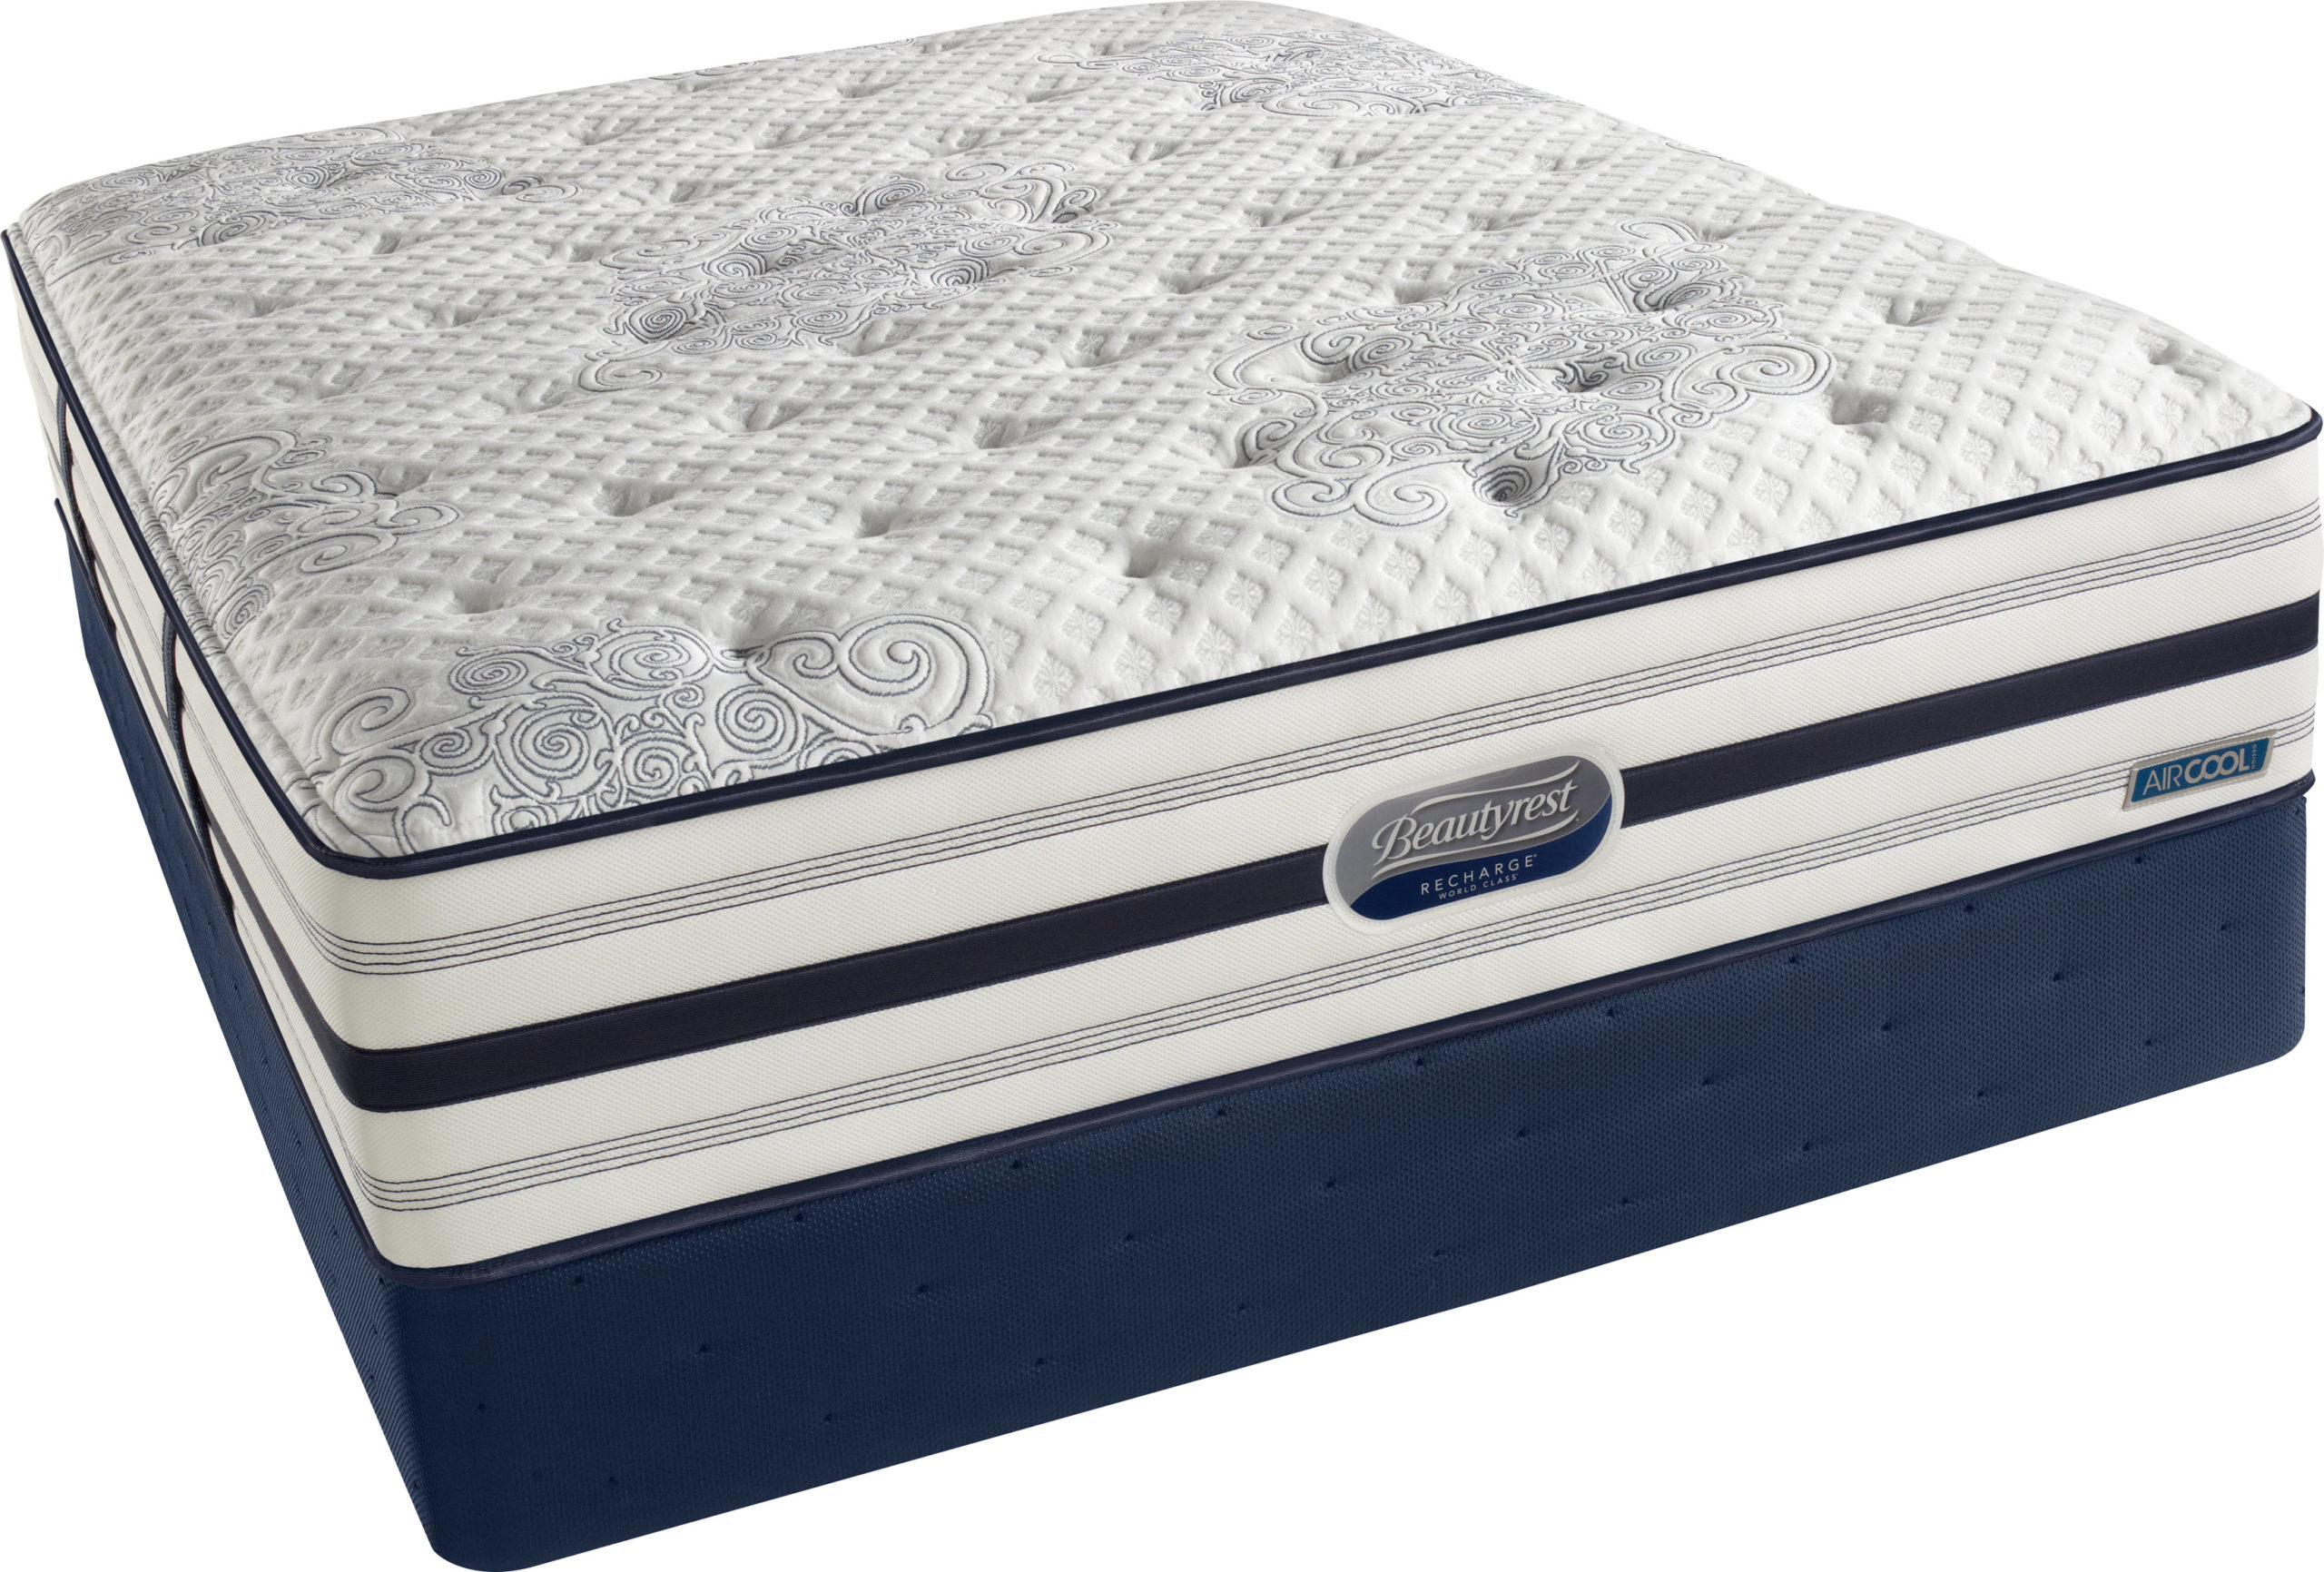 simmons beautyrest world class richmond plush mattress review